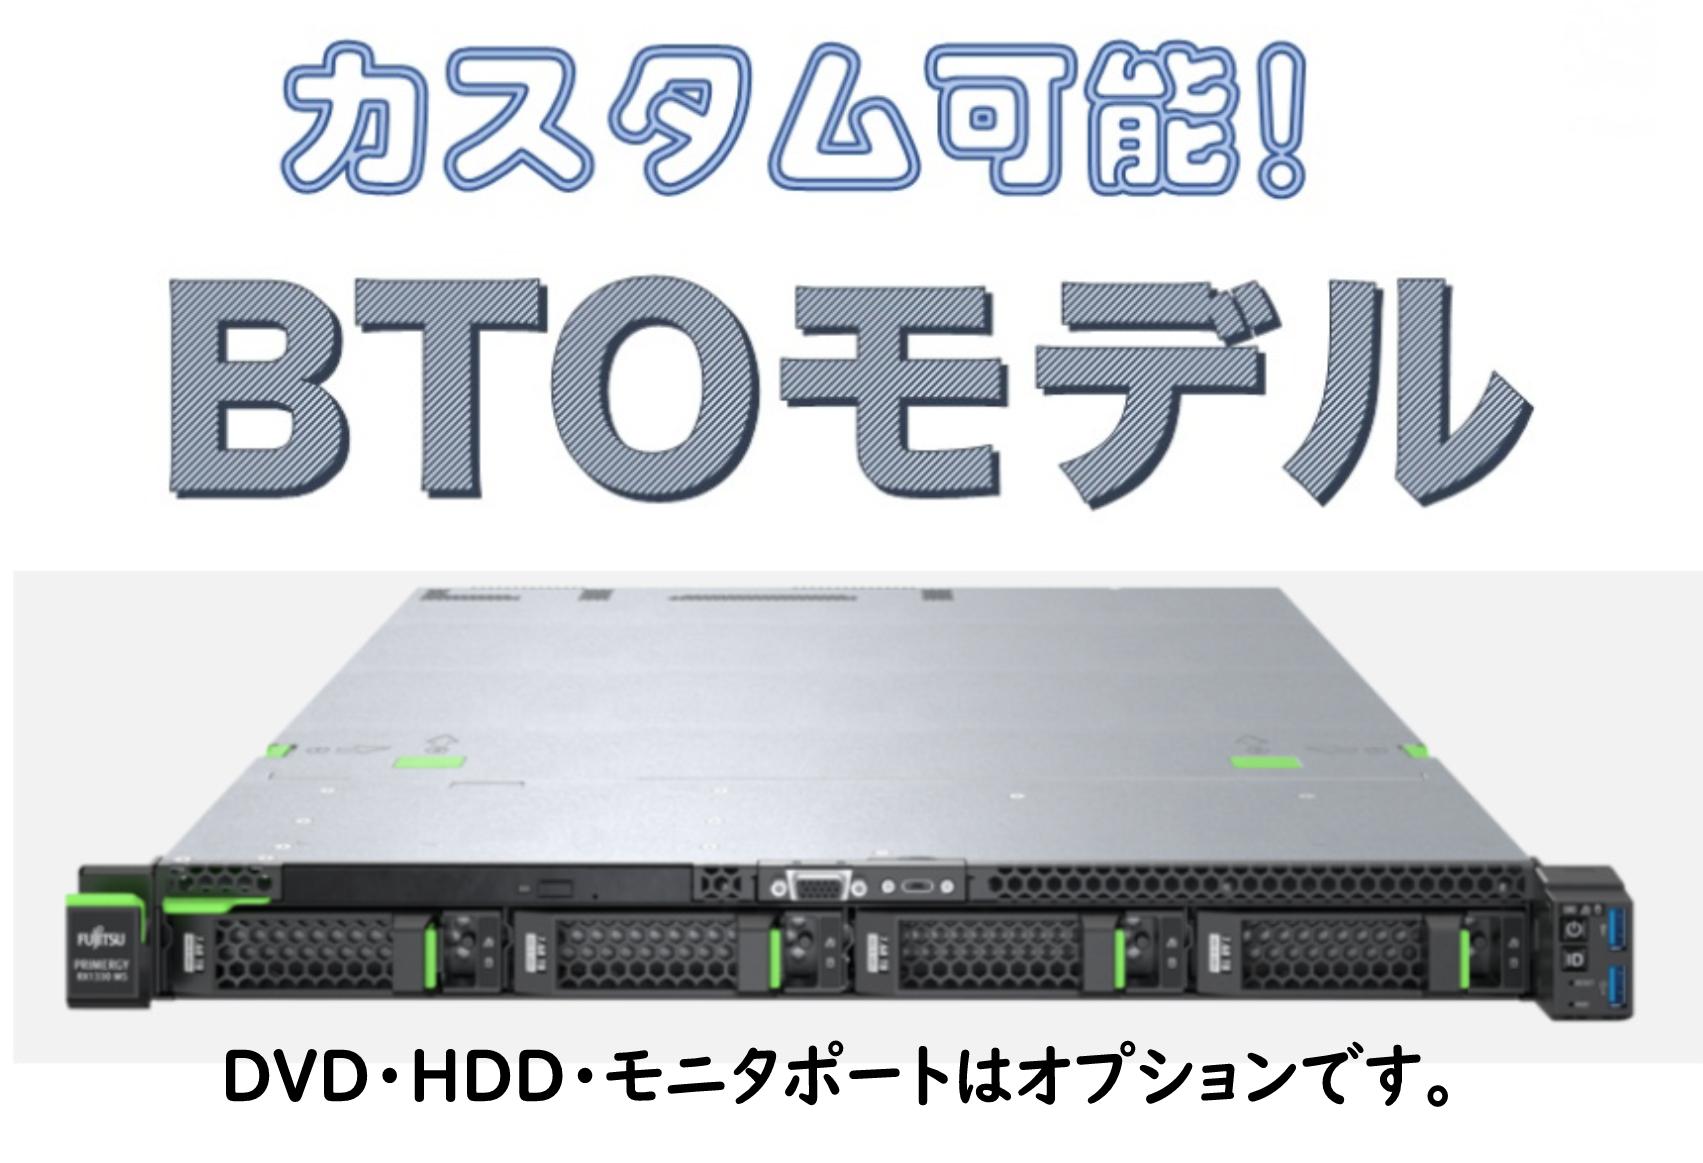 【超特急組込済モデル】新品 Fujitsu PRIMERGY RX1330 M4 E-2124 2.5インチ4ベイ 600GB*3 超特急即納モデル 3年間保証付